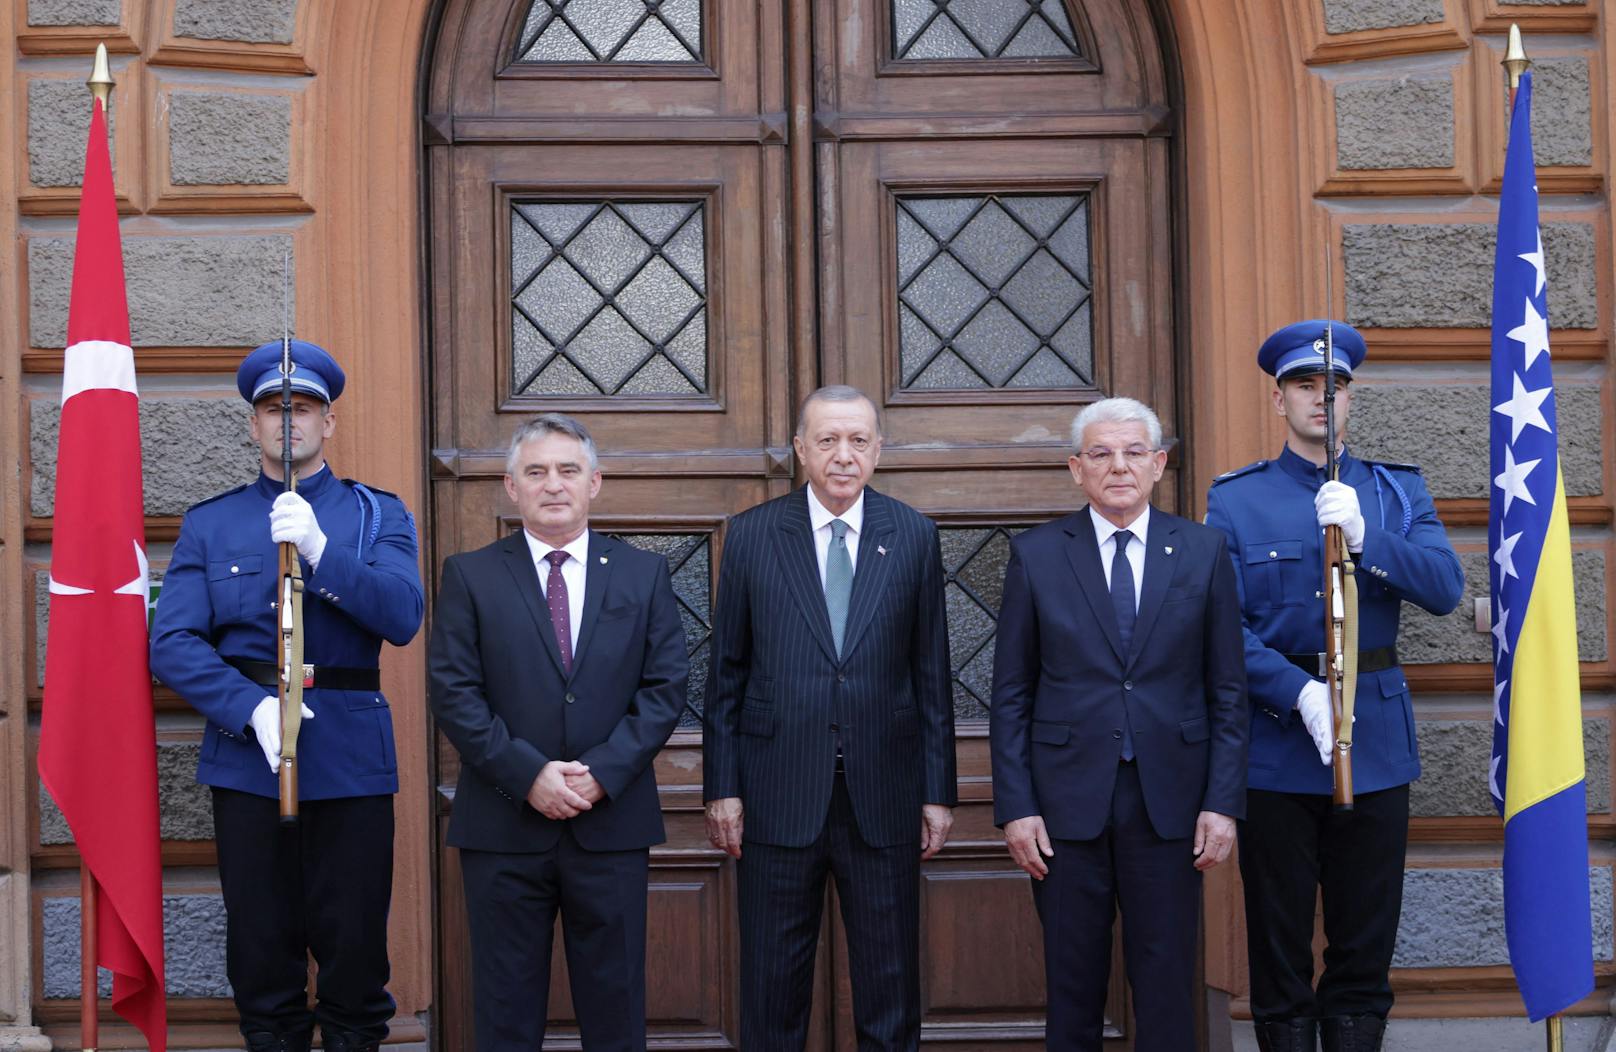 Am Dienstag besuchte der Türkei-Präsident Bosnien, um über die Stabilität des Balkan-Staates zu sprechen.